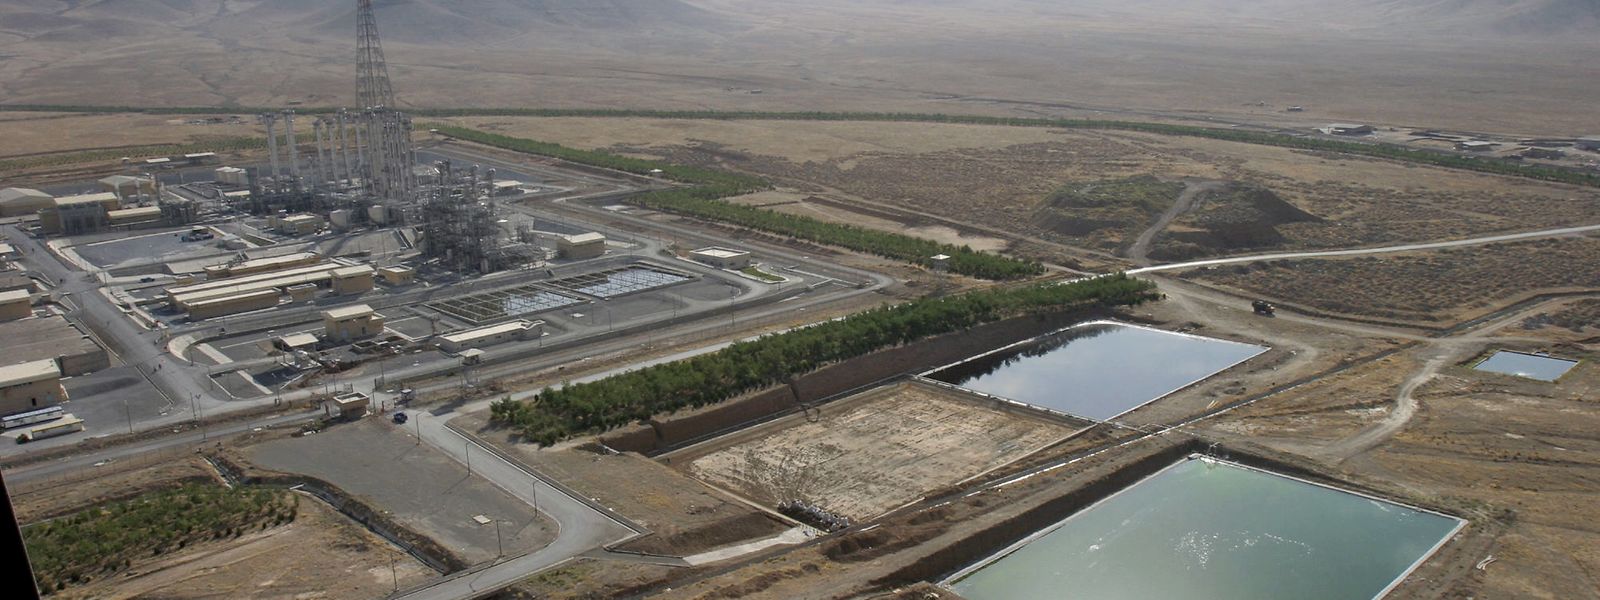 Die Schwerwasseranlage in der iranischen Stadt Arak. Schwerwasser wird in Reaktoren verwendet, die atomwaffenfähiges Plutonium herstellen können. 